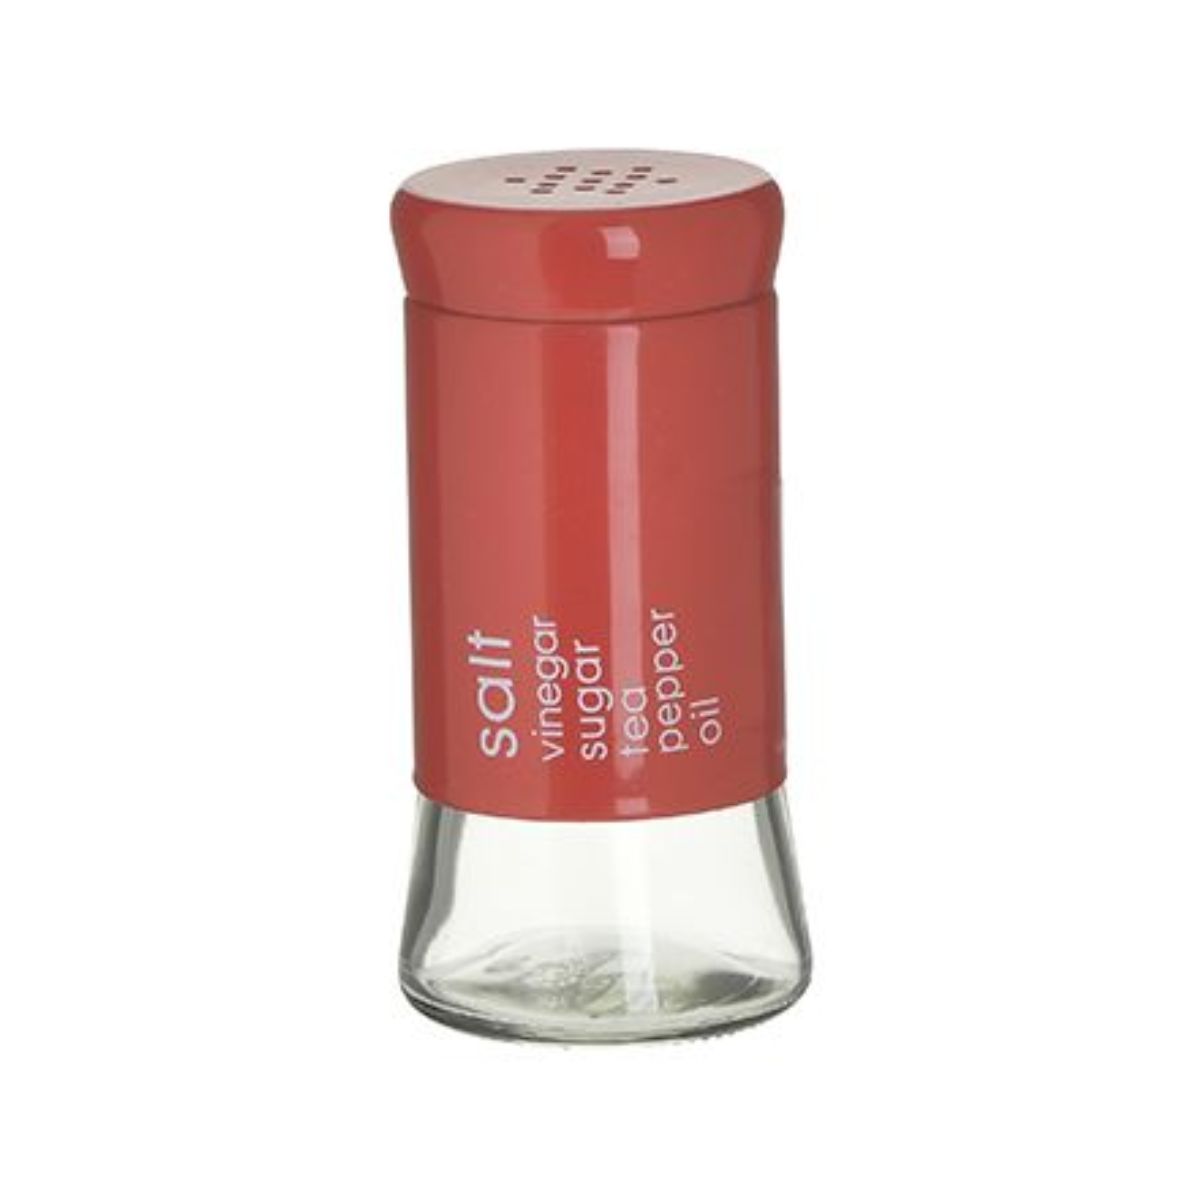 Bucatarie - Recipient rosu pentru mirodenii, din sticla, Φ6X11 Inart, hectarul.ro